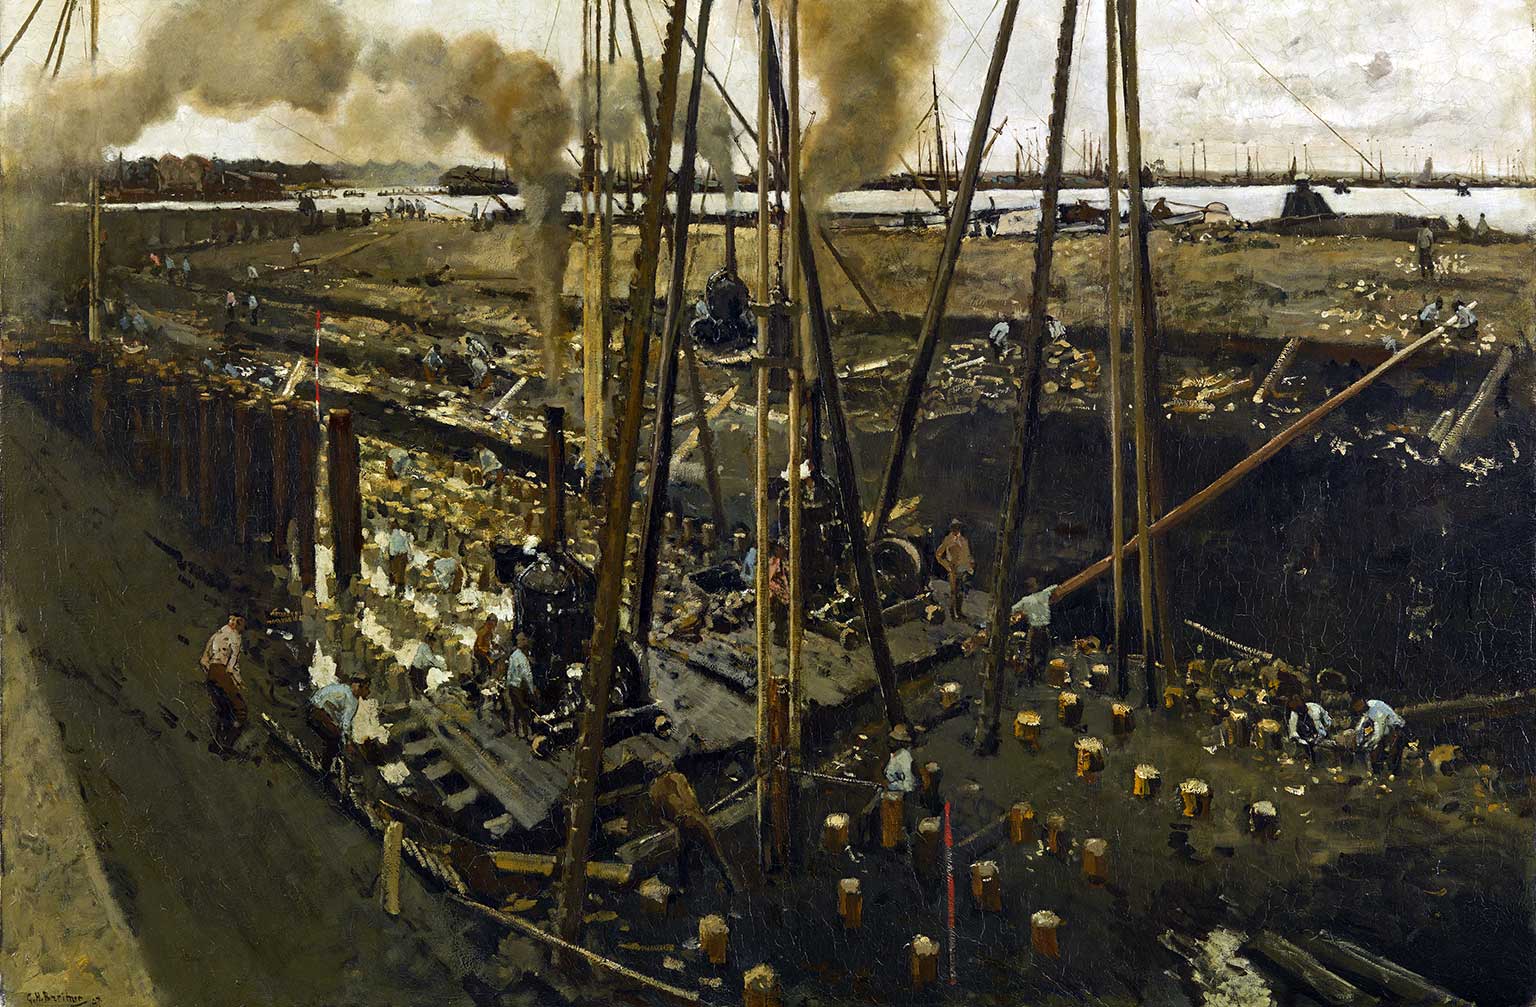 Heiwerkzaamheden Van Diemenstraat, Amsterdam, schilderij uit 1897 van George Hendrik Breitner